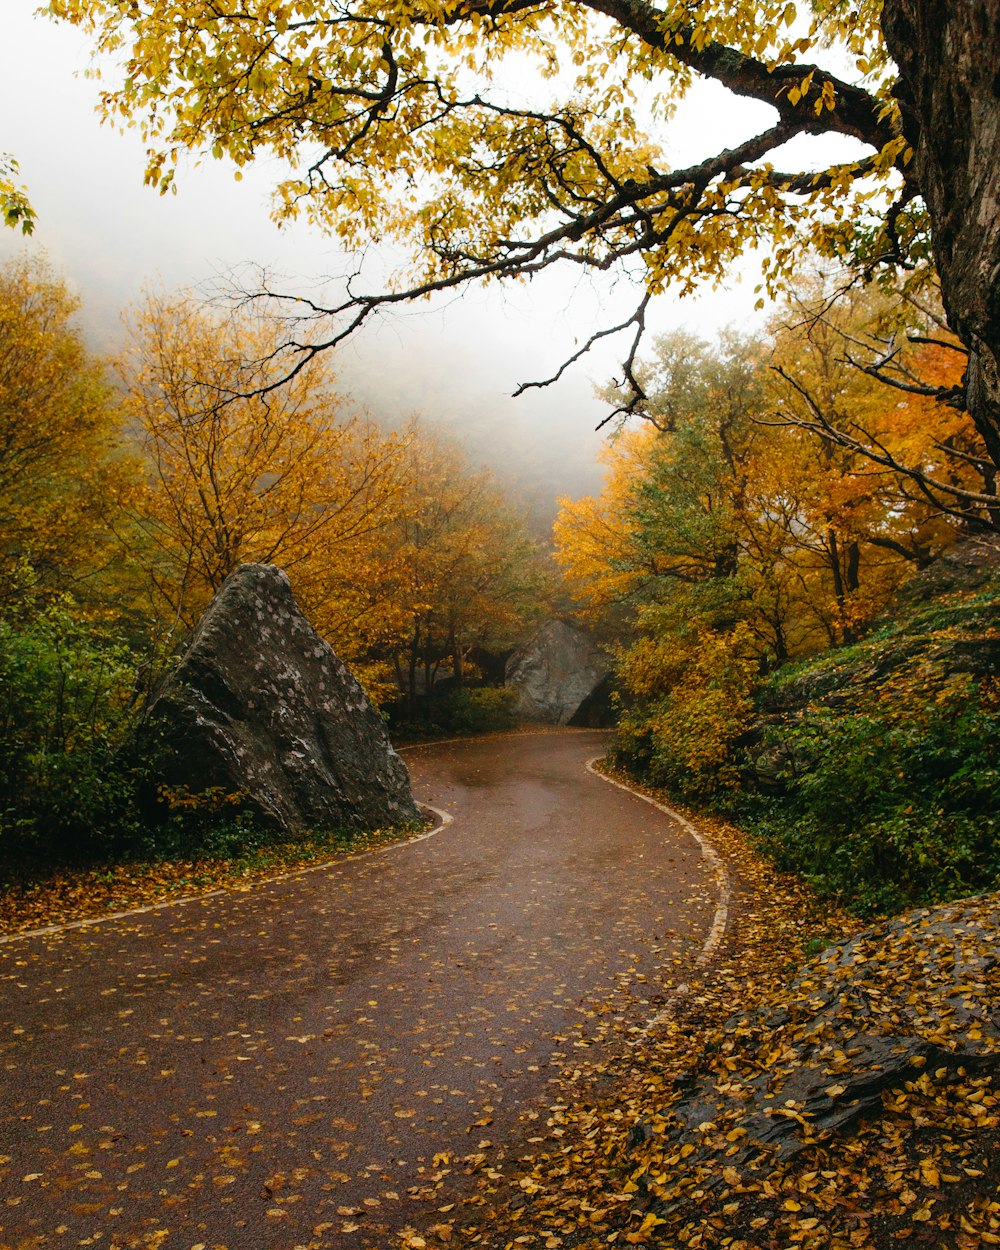 caminho cercado por árvores de folhas amarelas